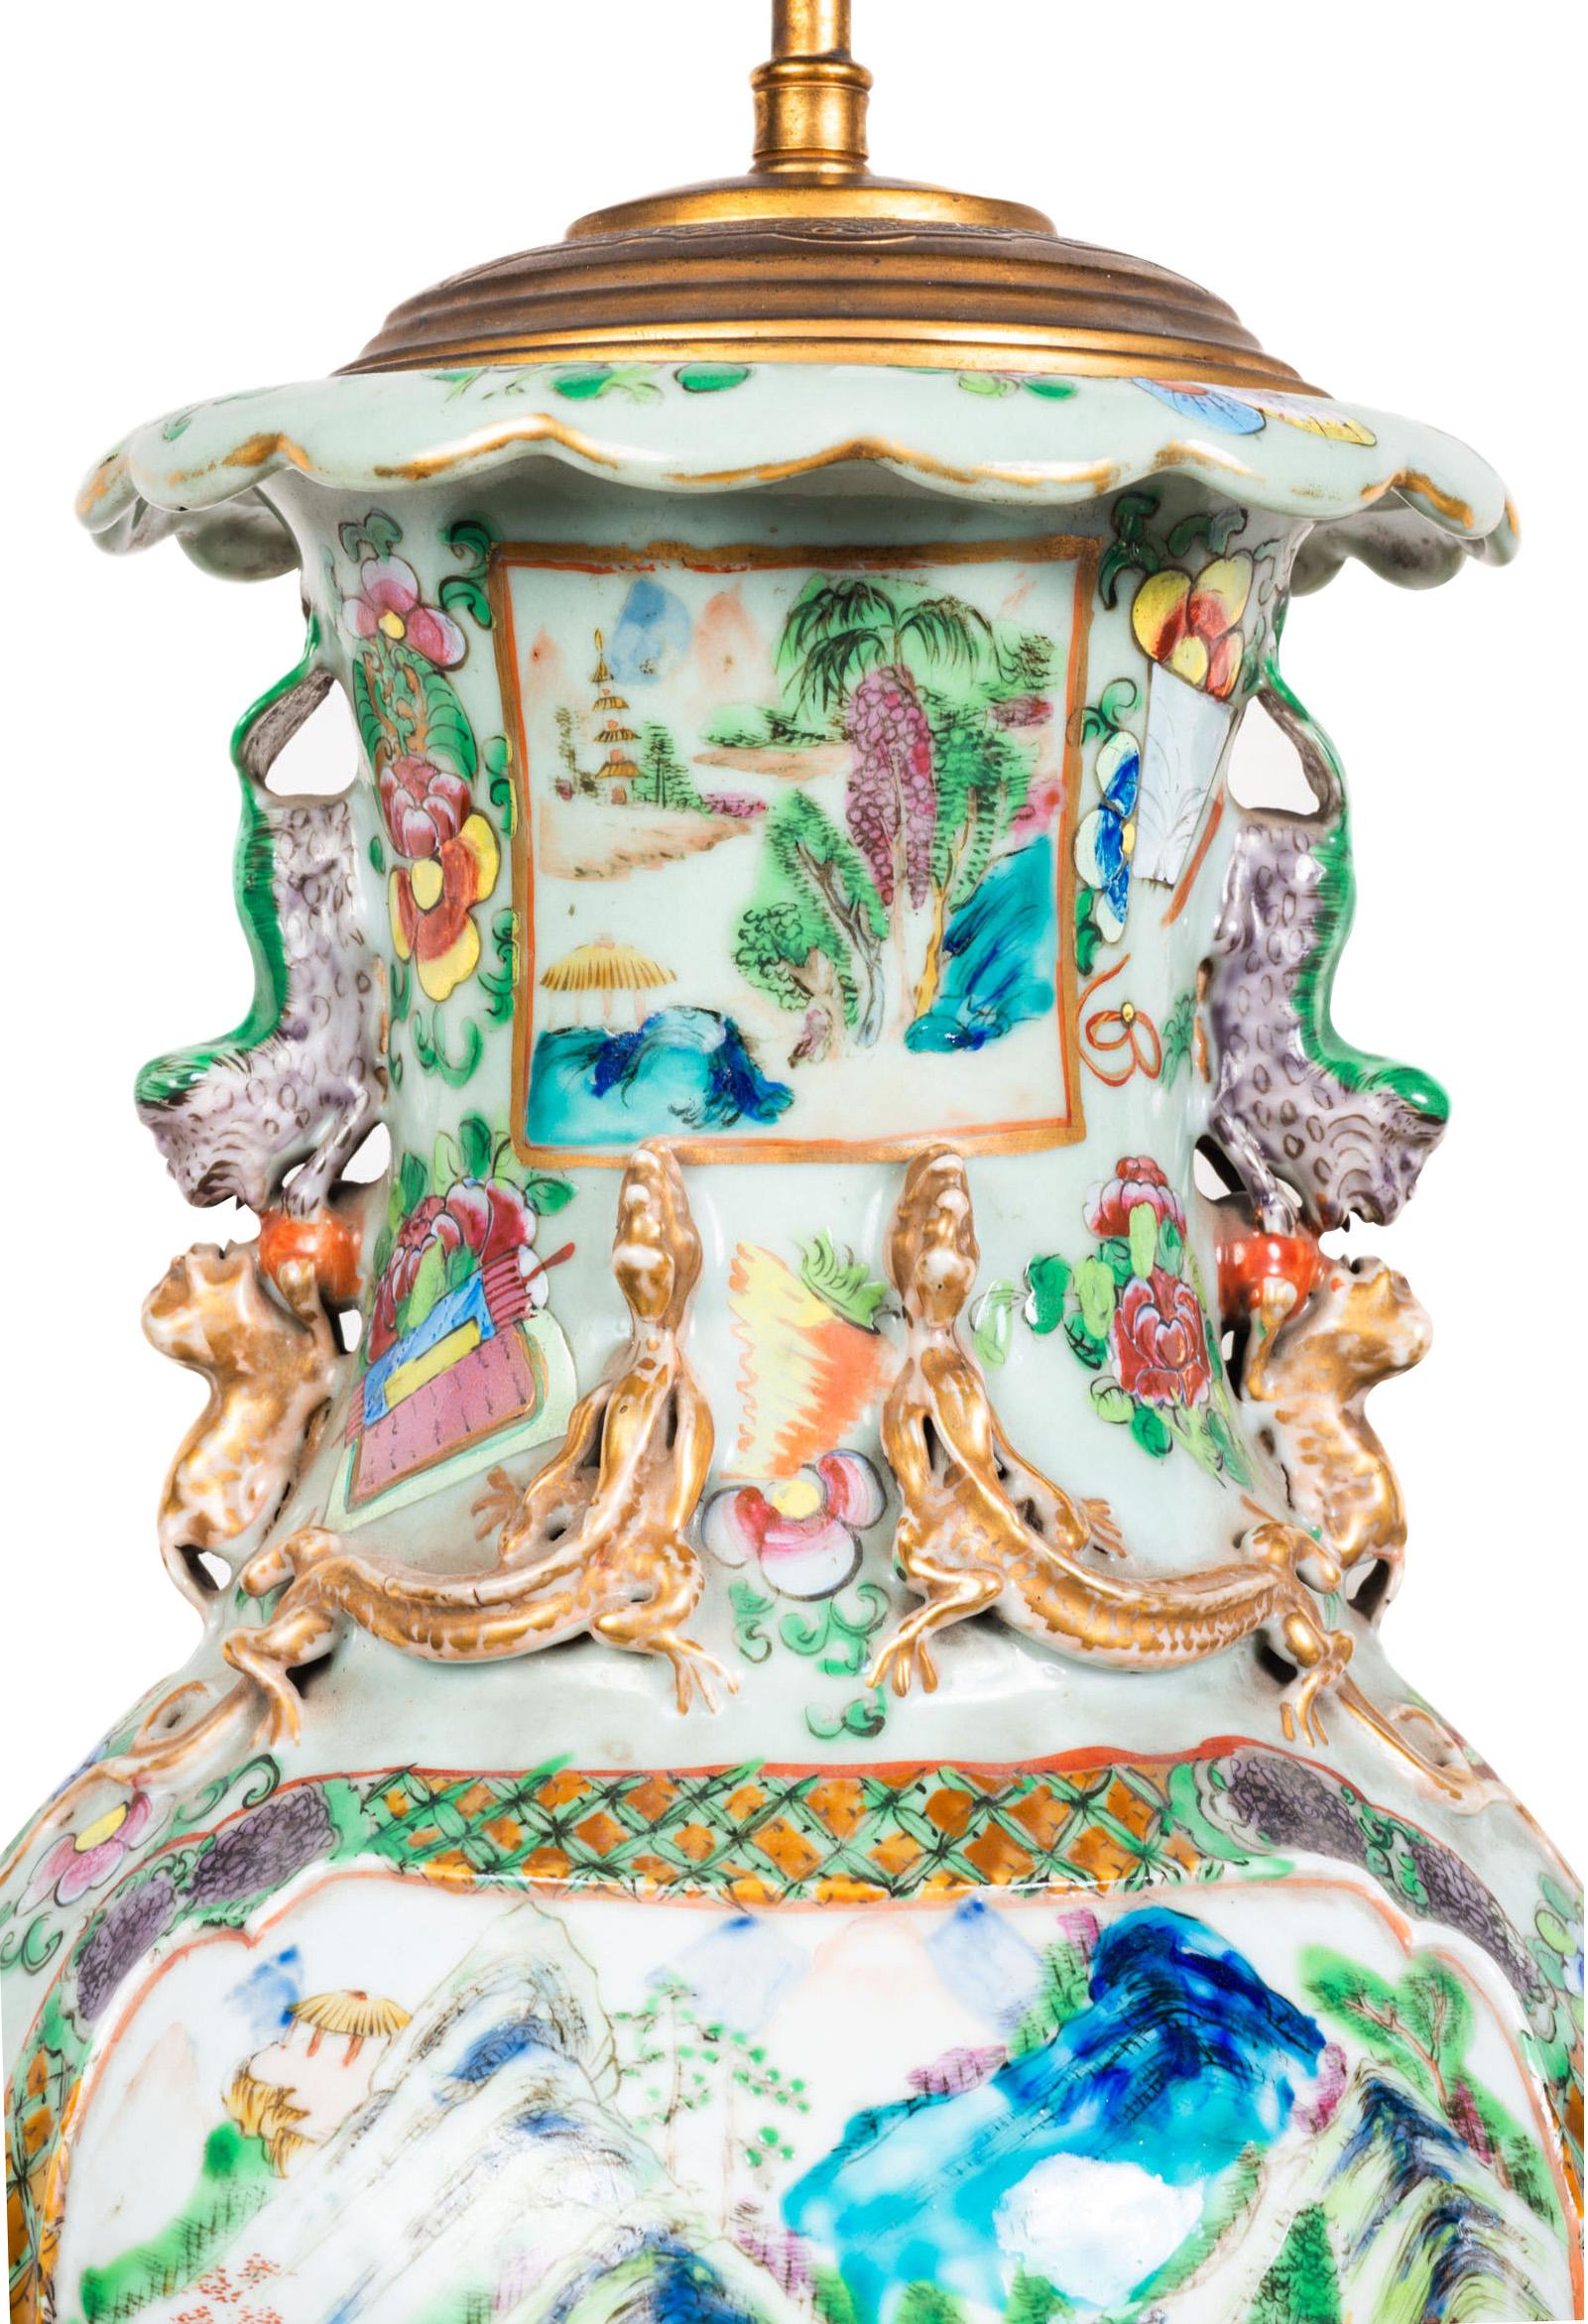 Magnifique paire de vases/lampes à médaillon en rose de la Chine cantonaise du milieu du 19e siècle, chacun avec des couleurs vives, des fleurs exotiques, des papillons et des motifs. Panneaux peints encastrés représentant des scènes de montagne et